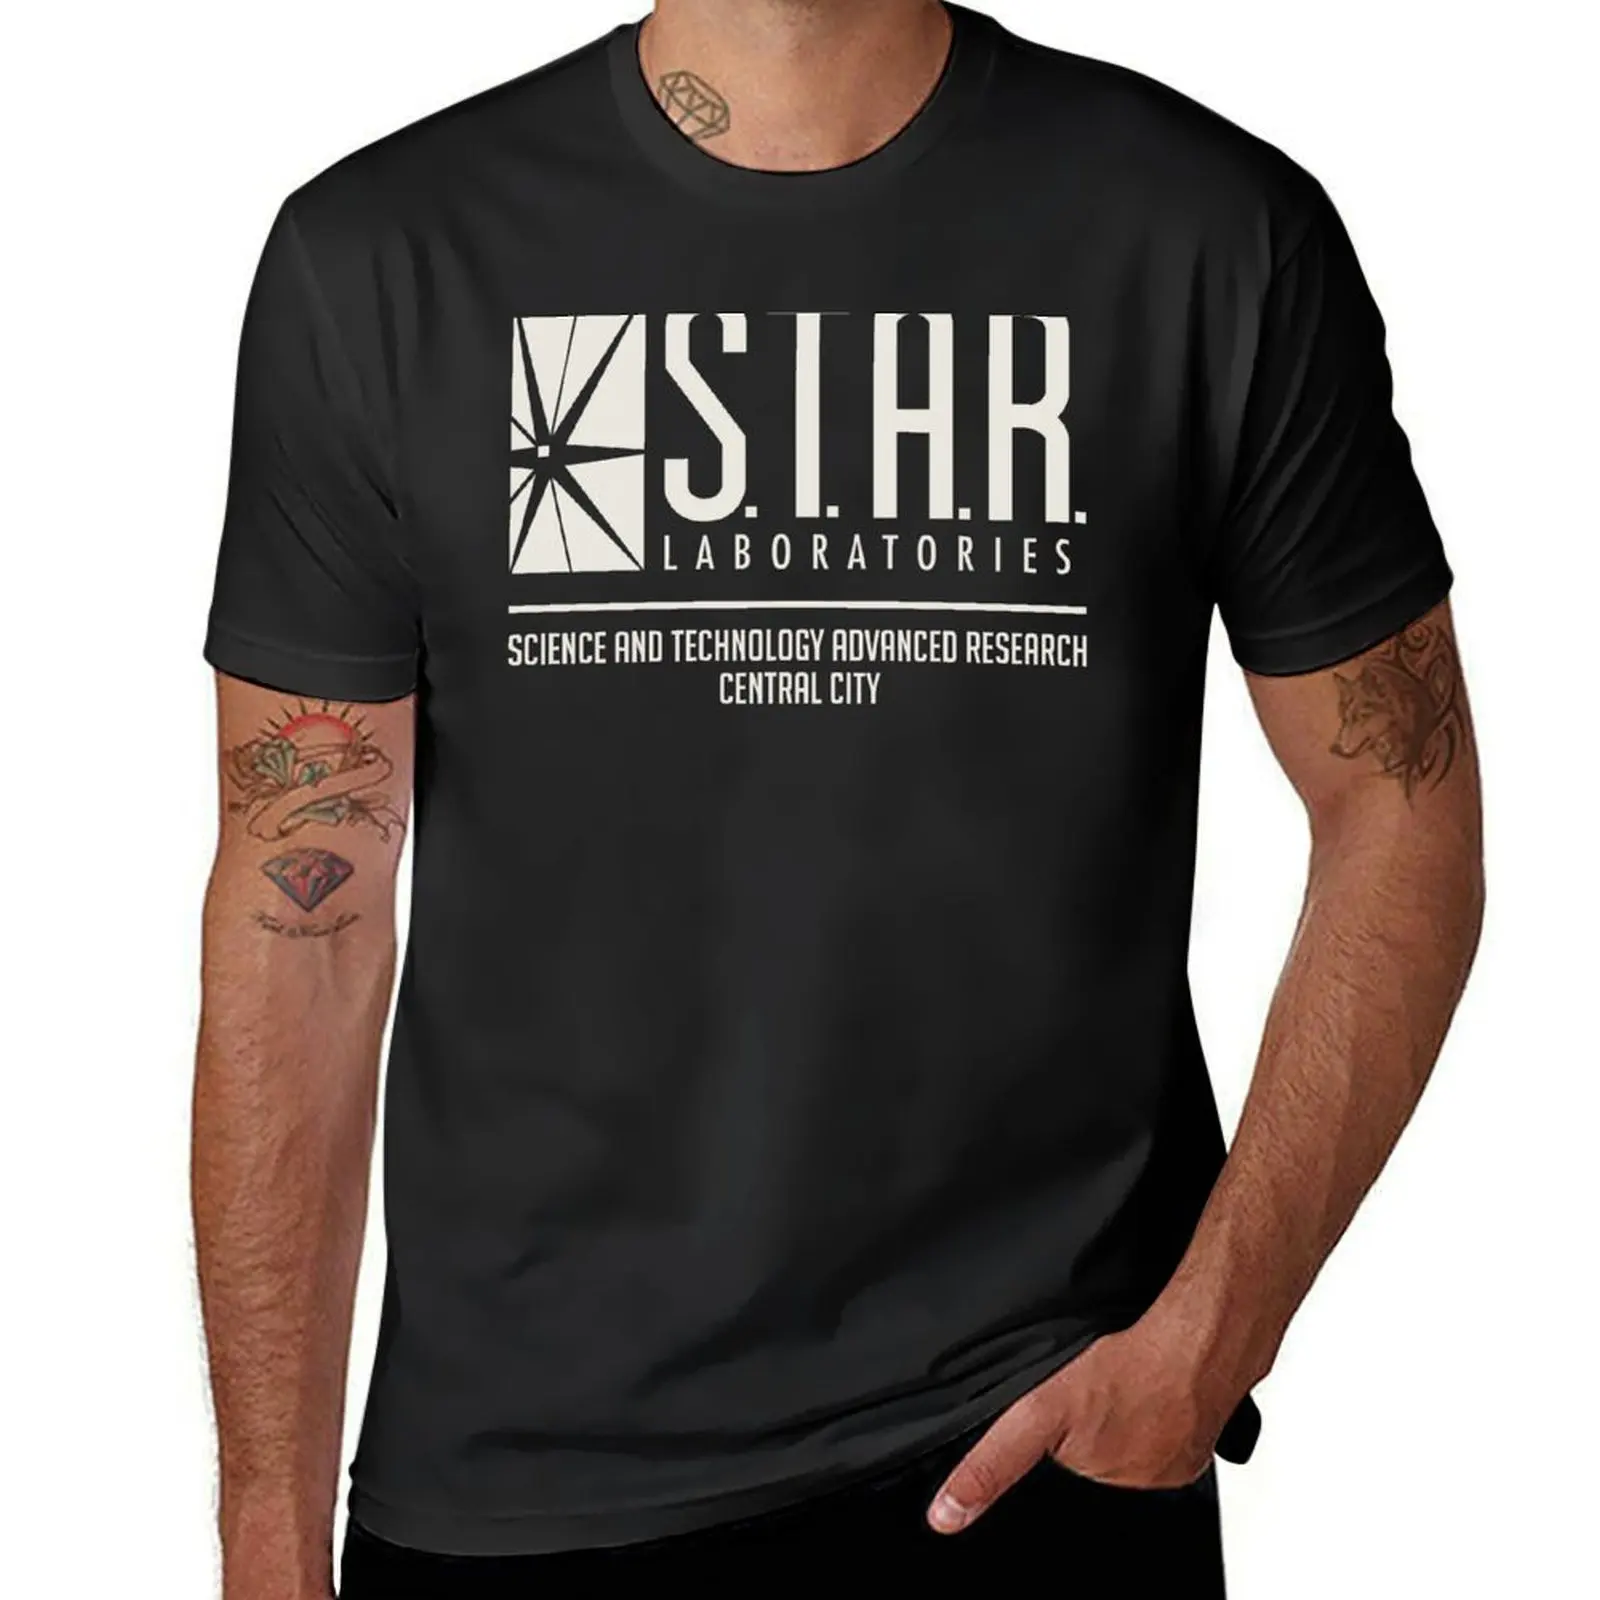 Star Labs T-Shirt maßge schneiderte übergroße einfache Bräuche entwerfen Sie Ihre eigenen schweren T-Shirts für Männer